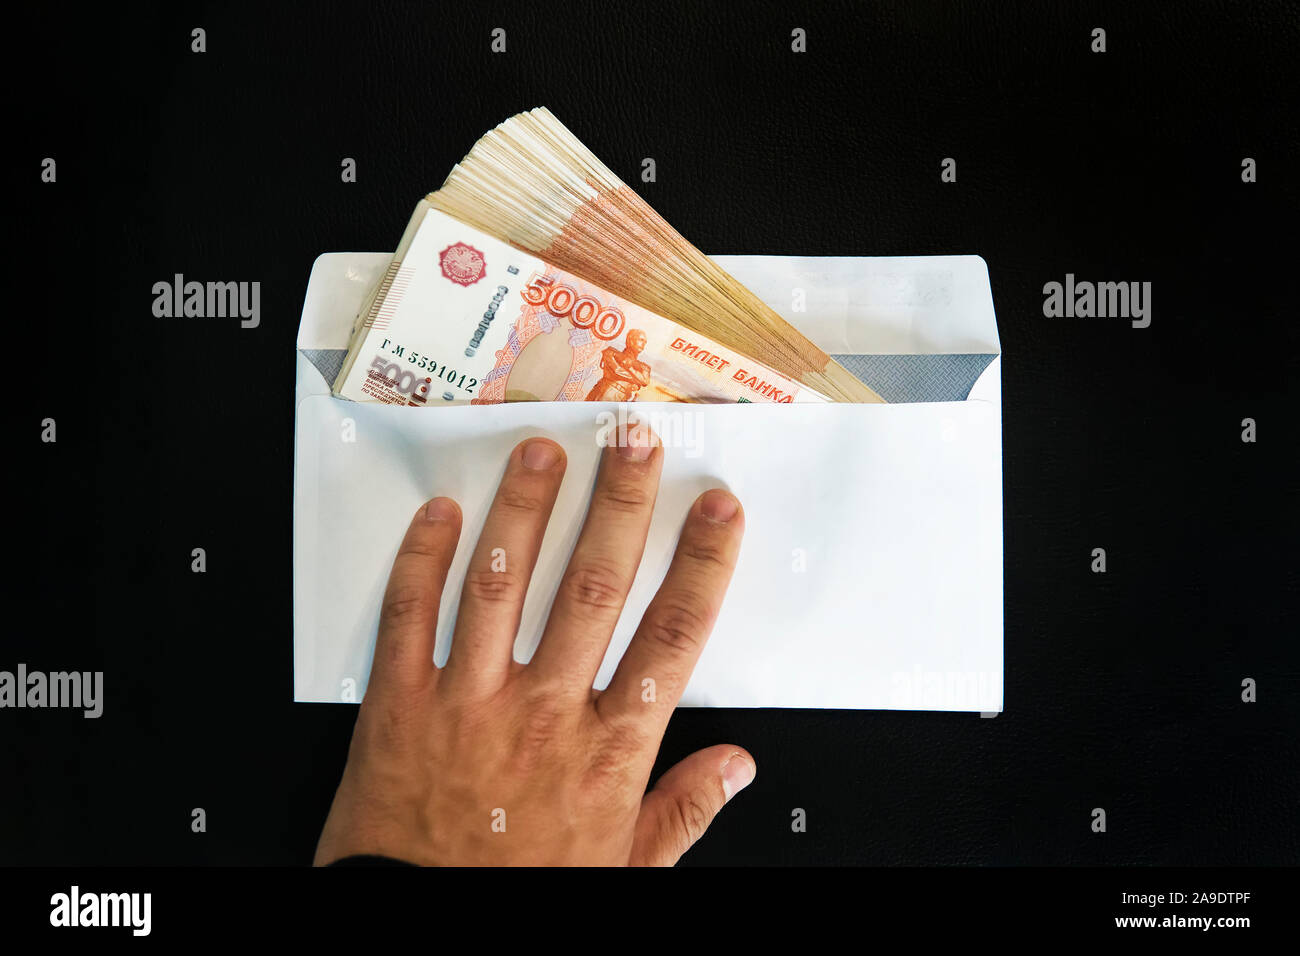 Grosses coupures de 5000 roubles dans une enveloppe blanche. Un homme part détient une enveloppe avec de l'argent. Le concept de corruption, le cash flow de trésorerie. Banque D'Images